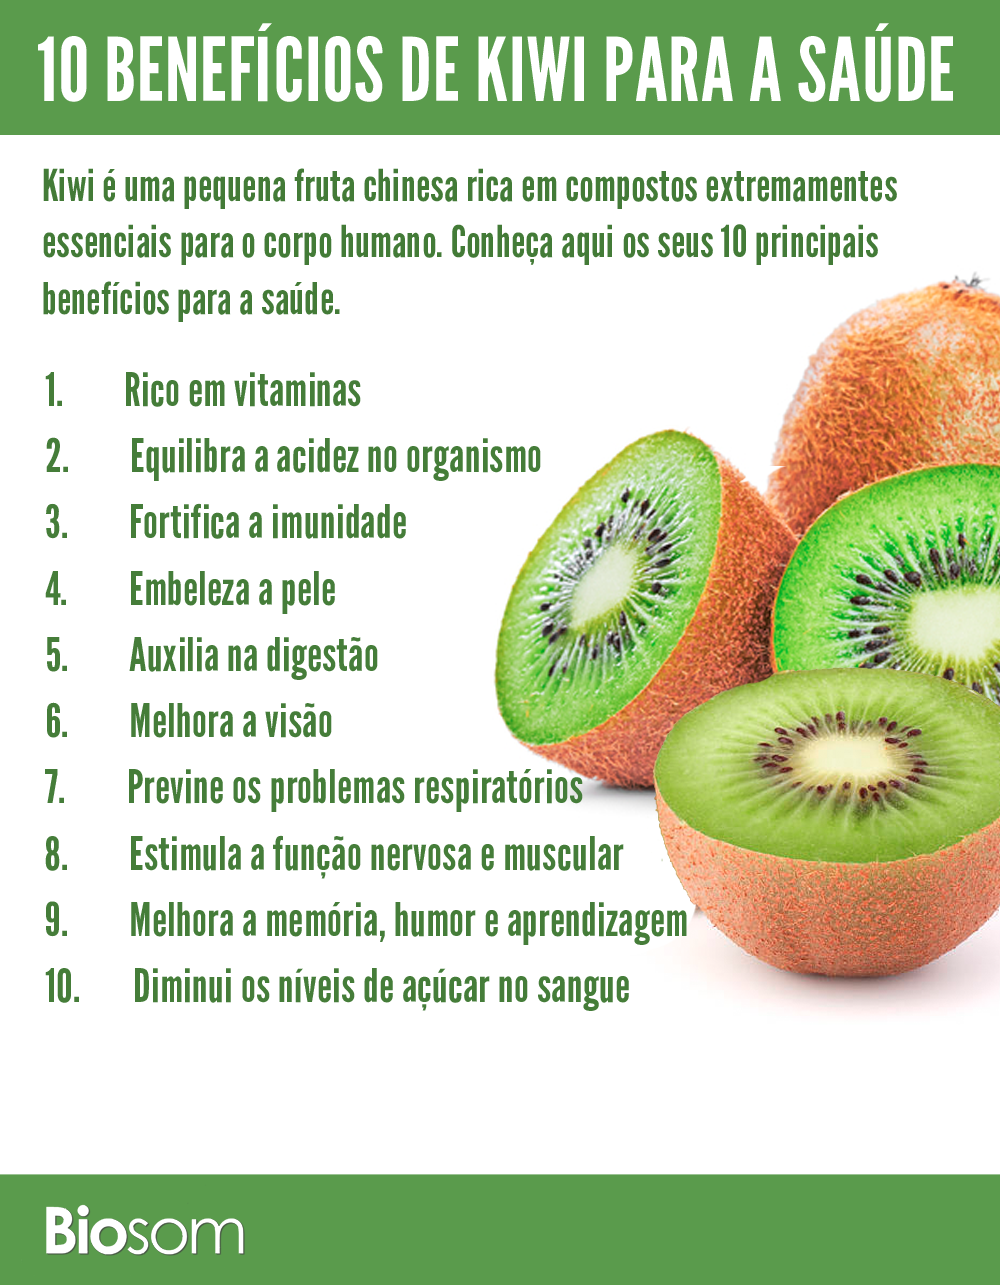  Kiwi: khám phá 7 lợi ích TUYỆT VỜI của loại trái cây ngọt ngào và bổ dưỡng này